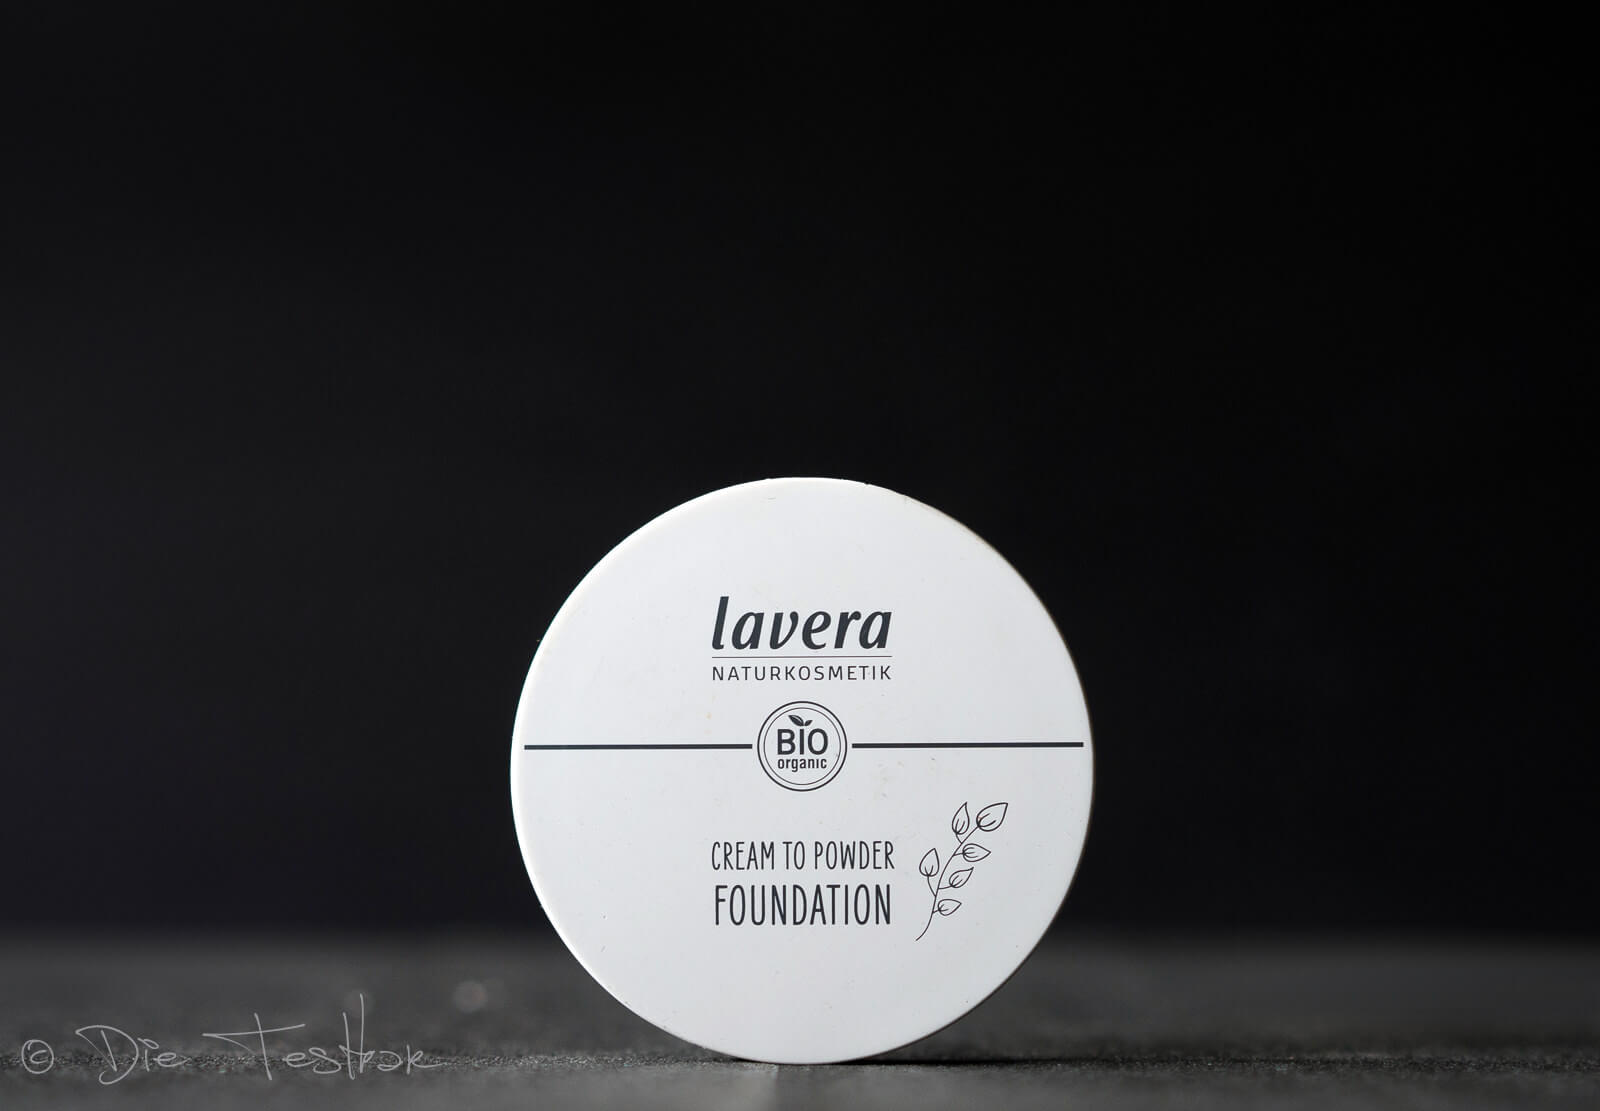 lavera - Dekorative Kosmetik - Neu im Sortiment - Bronzer, Rouge, Grundierung und Eyeshadows 9